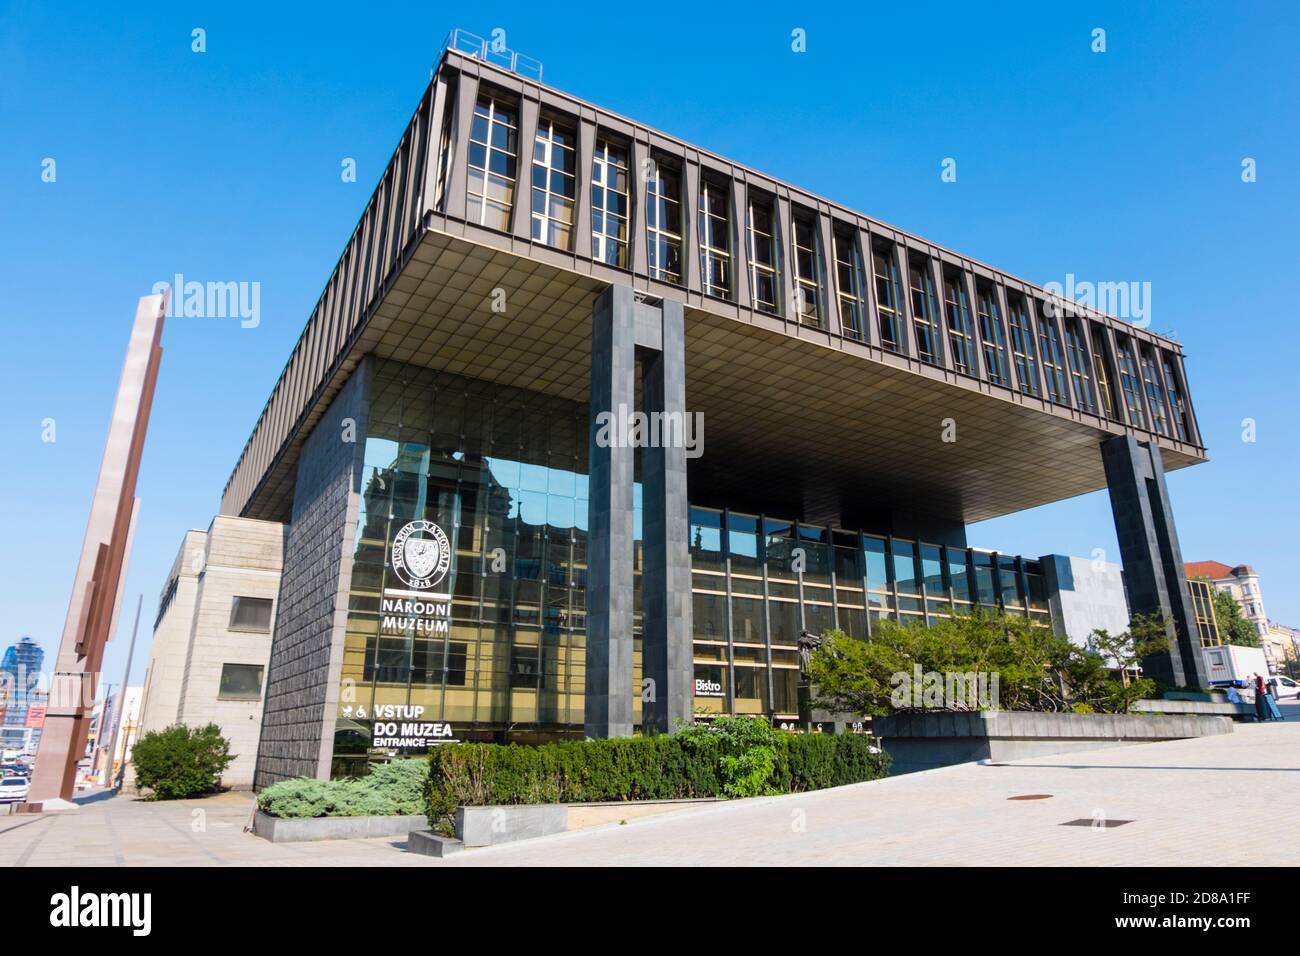 Nová budova Národního muzea, Nouveau bâtiment du Musée national, ancien bâtiment du Parlement, Vinohrady, Prague, République tchèque Banque D'Images